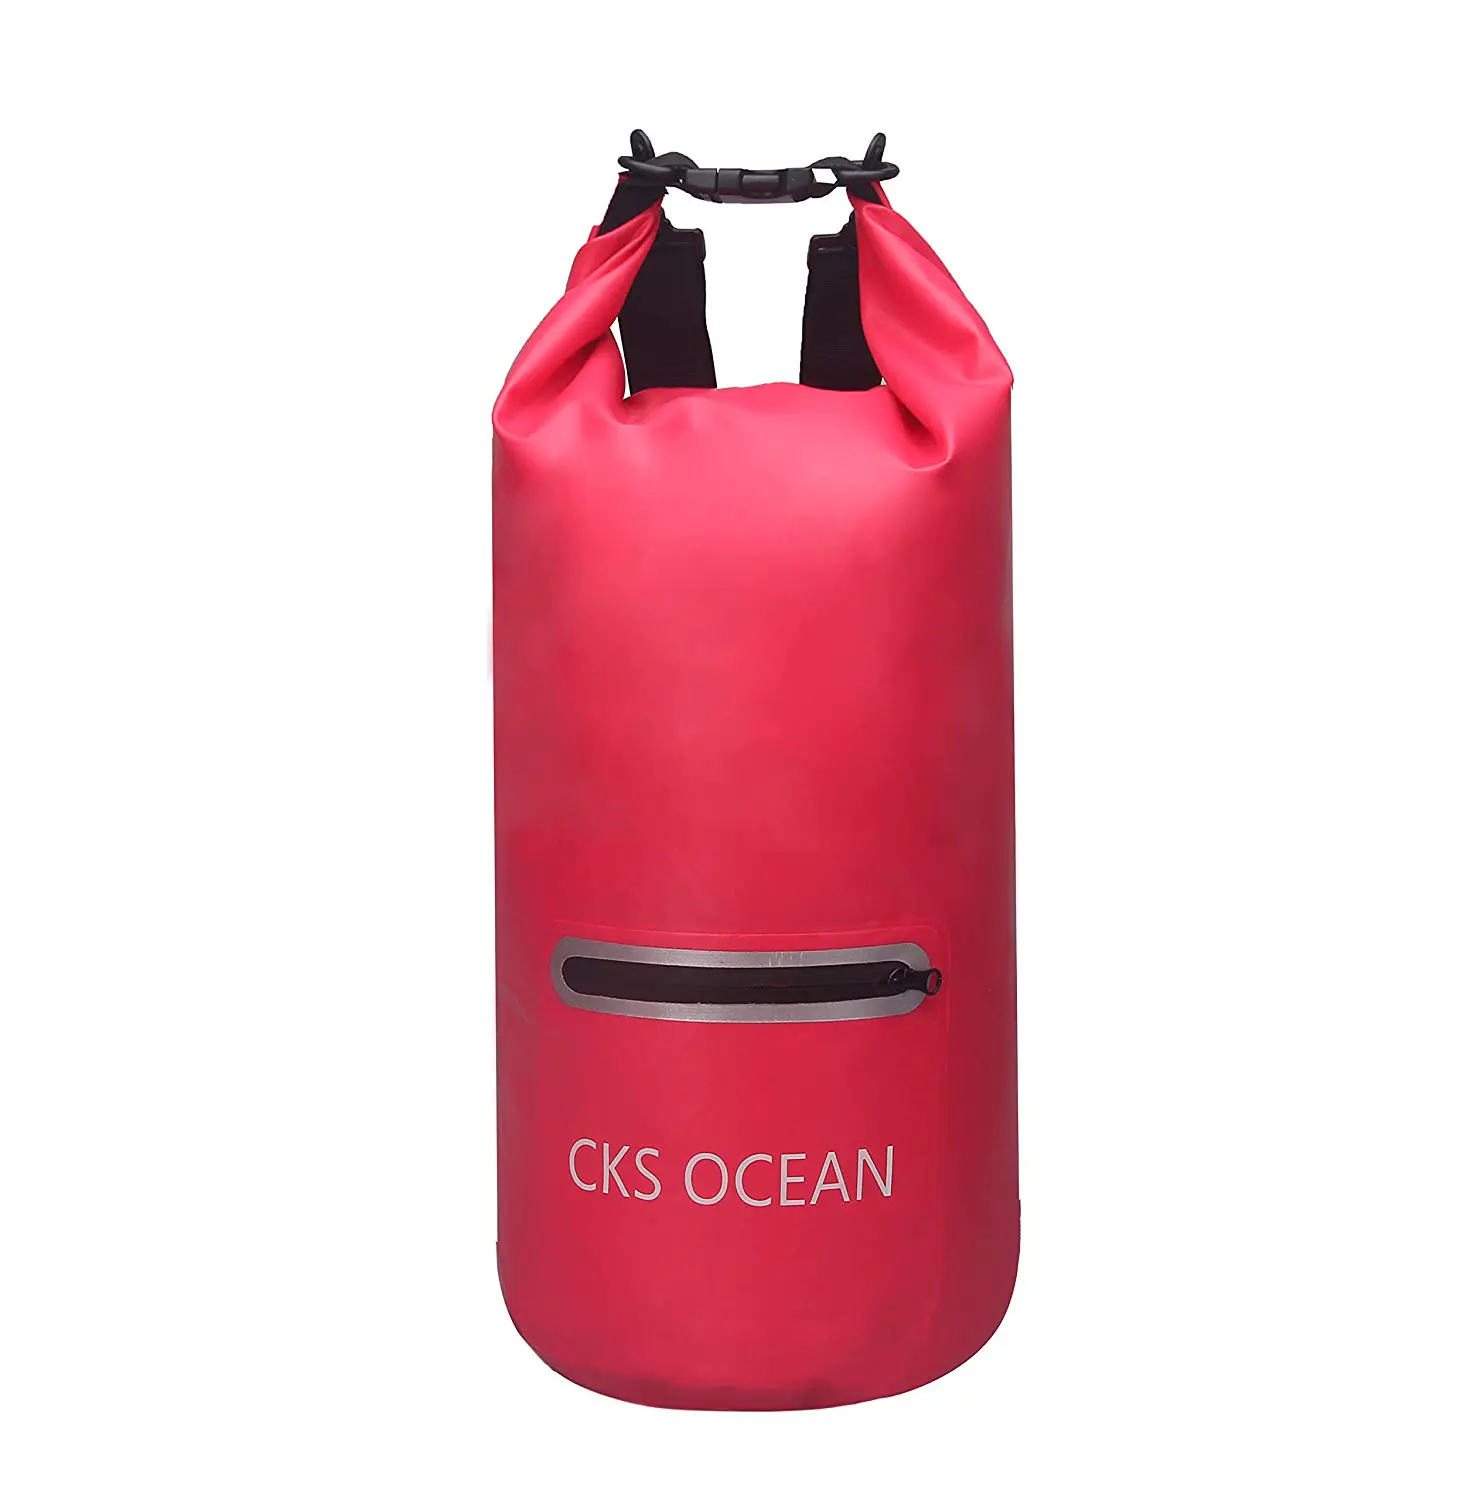 Prosperity 5 liter dry bag supplier for rafting